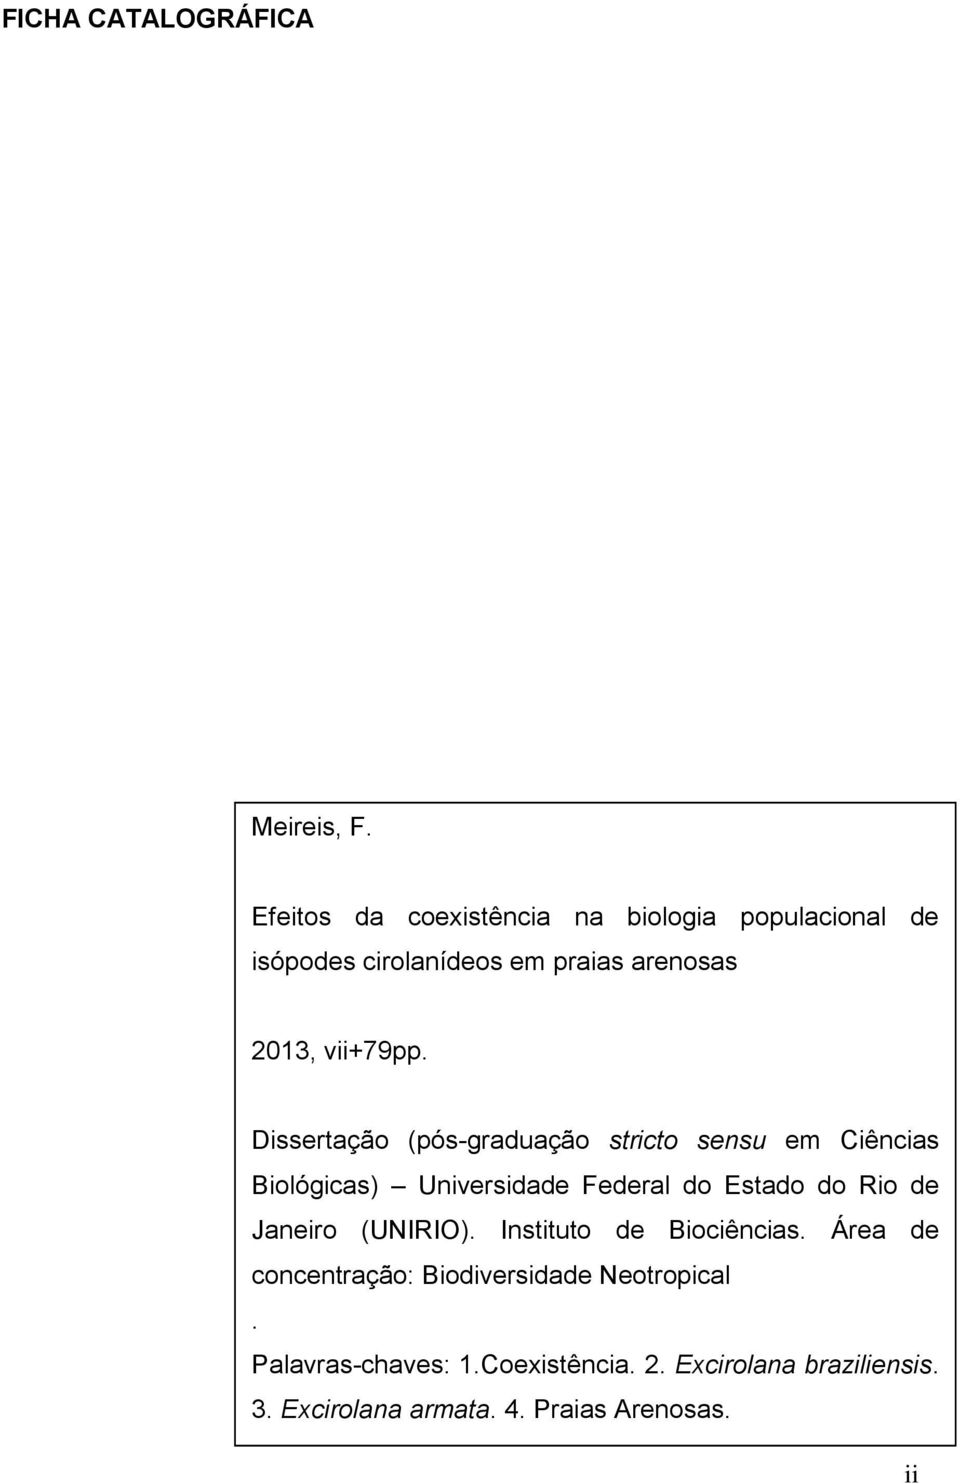 Dissertação (pós-graduação stricto sensu em Ciências Biológicas) Universidade Federal do Estado do Rio de